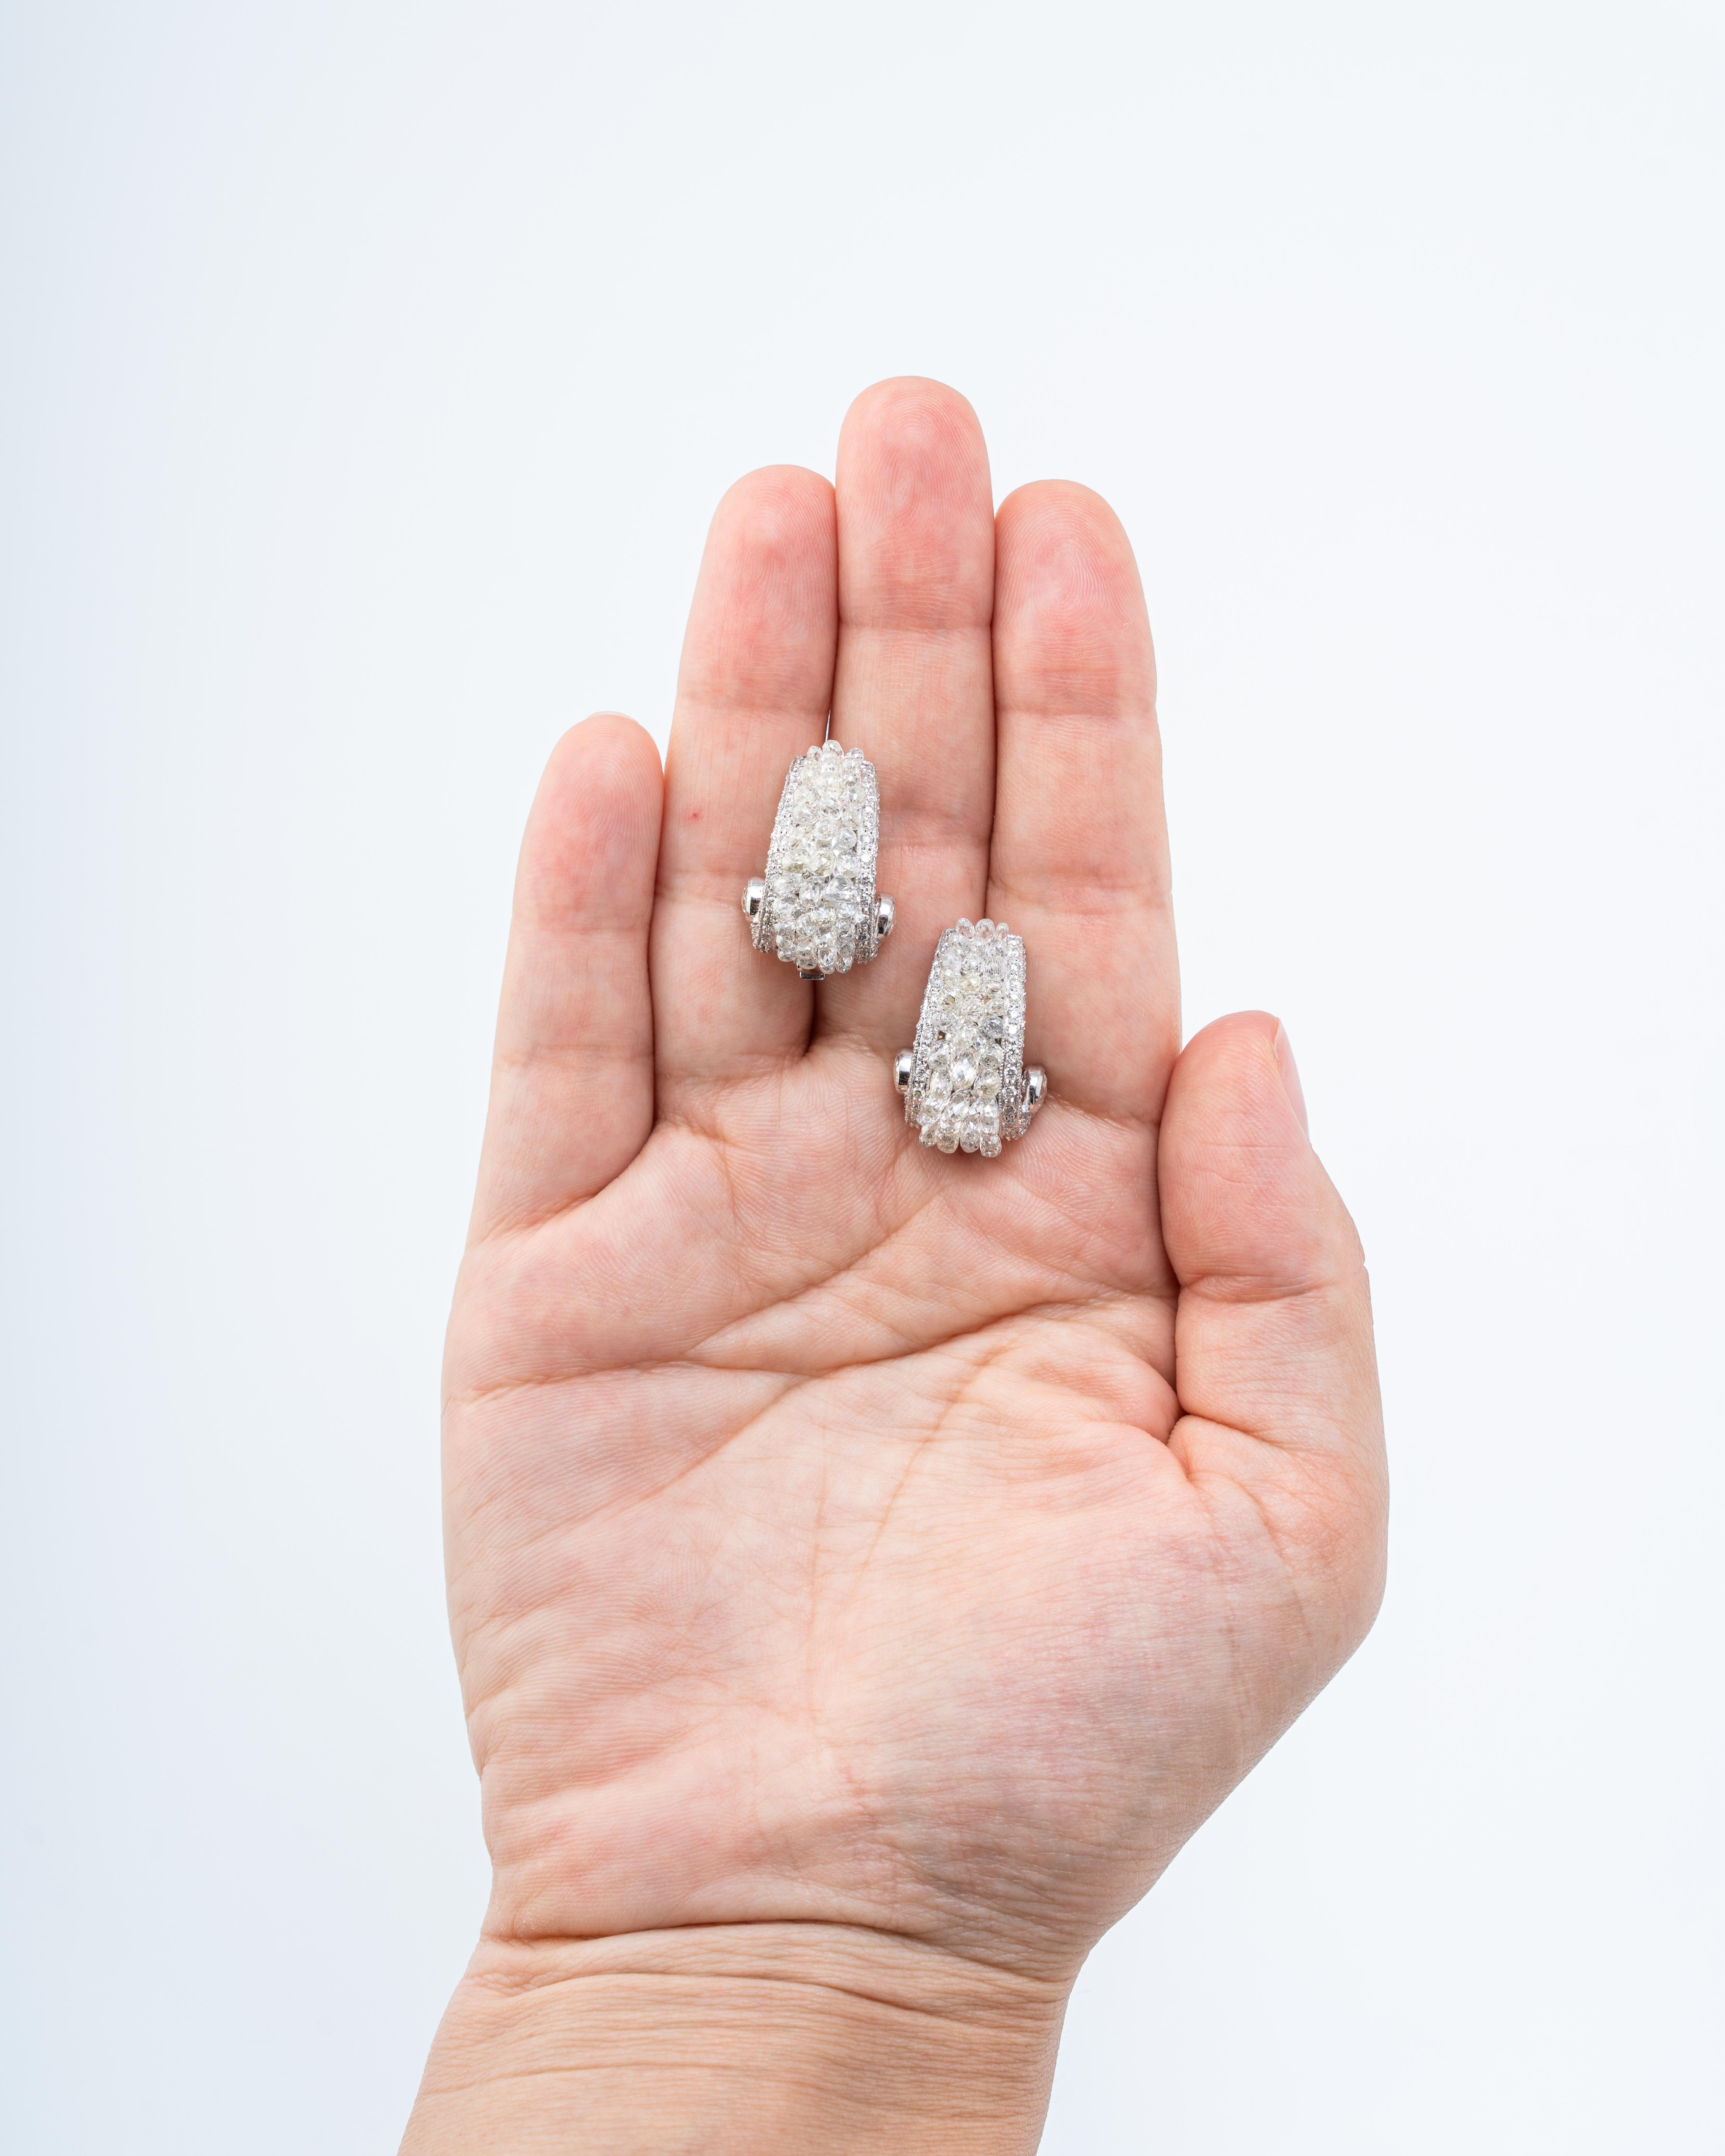 Ein Paar wunderschöner und sehr einzigartiger Diamant-Briollete-Ohrringe, gefasst in 14,91 Gramm massivem 18K Weißgold. Dieses Paar besteht aus insgesamt 11,05 Karat Diamanten, alle in VS-Qualität und farblos. Die Ohrringe werden mit einem